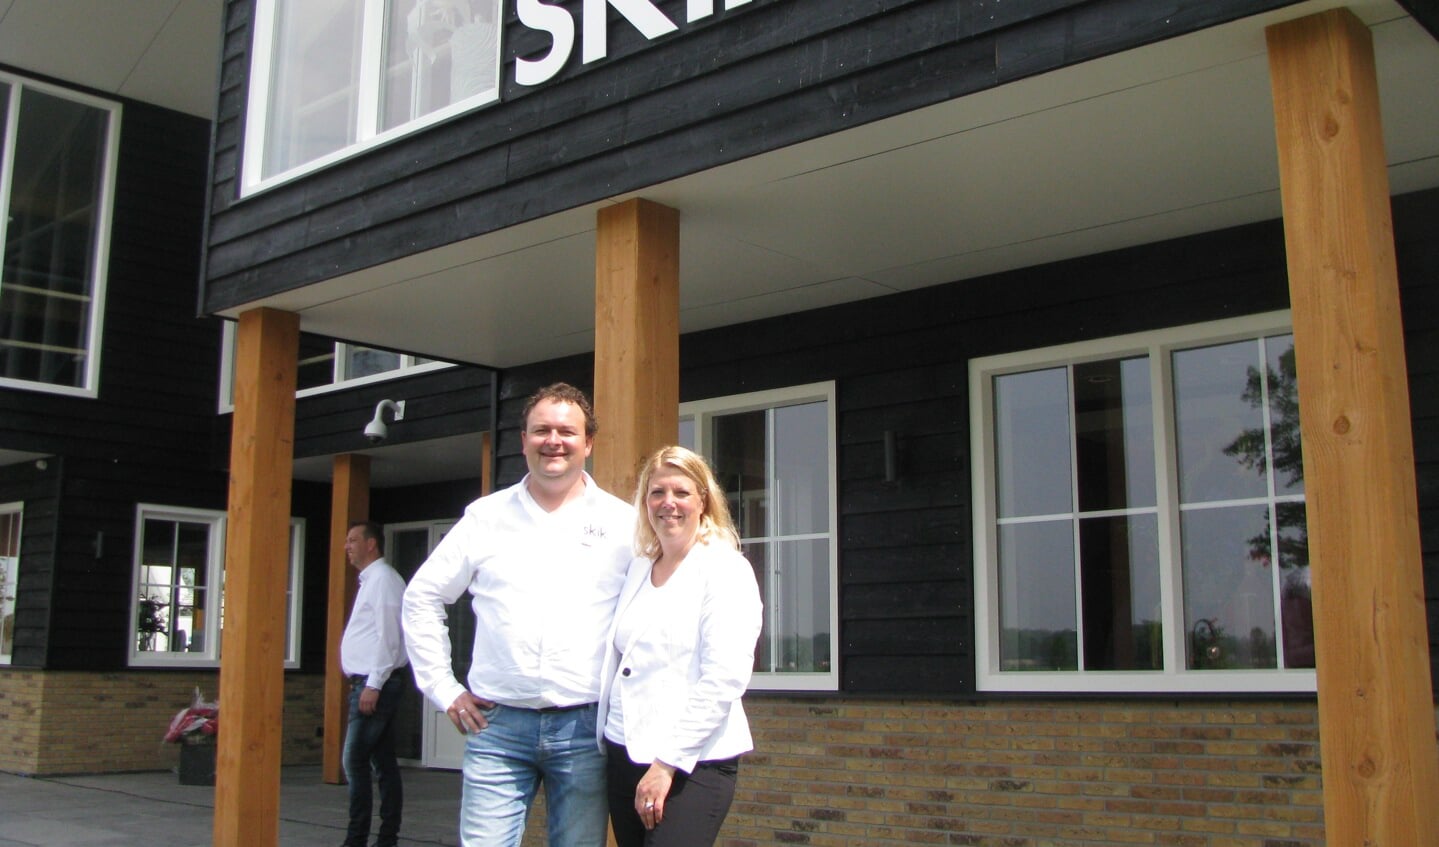 Links Barry Reijrink met echtgenote Mariël bij hun nieuwe horecabedrijf.